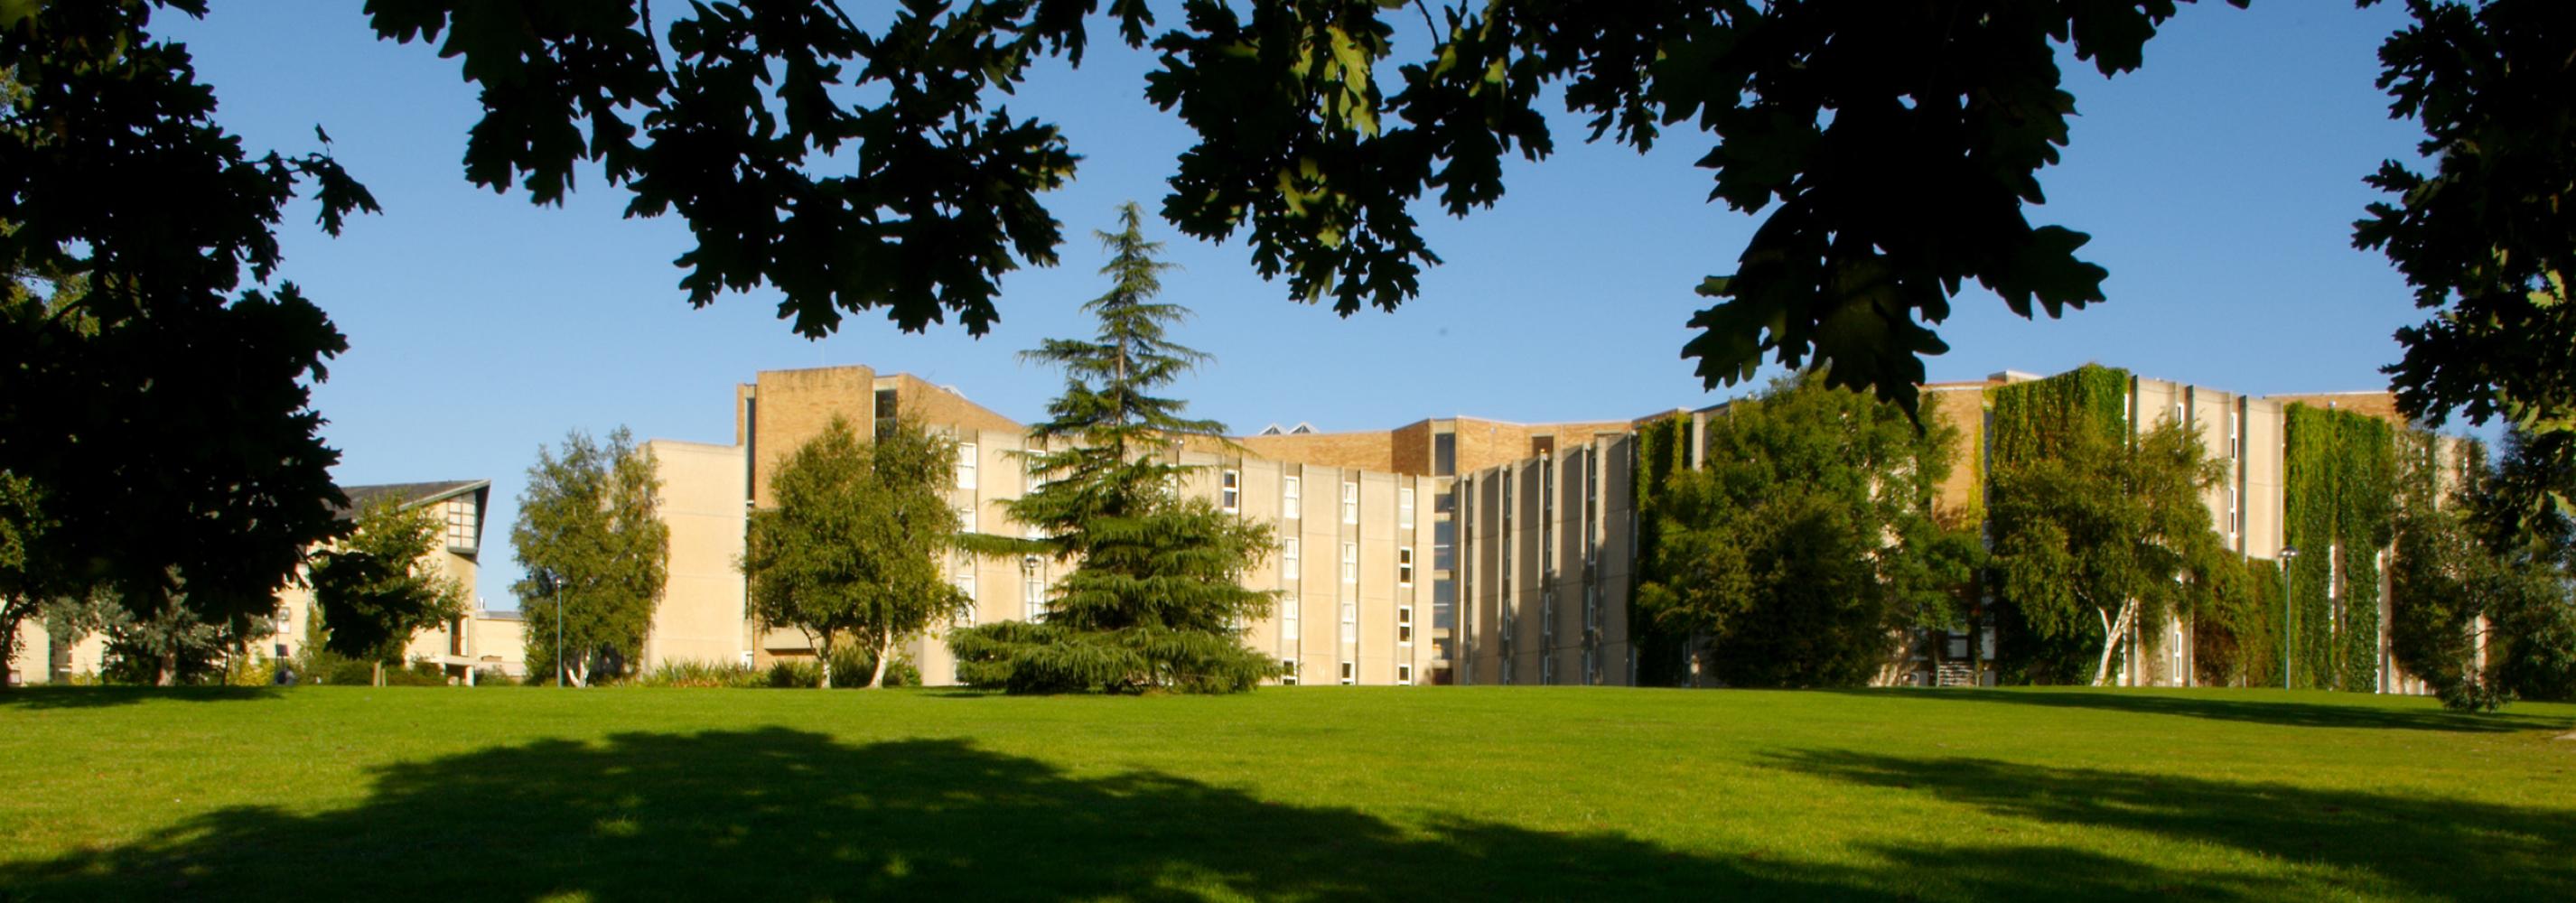 Eliot College exterior